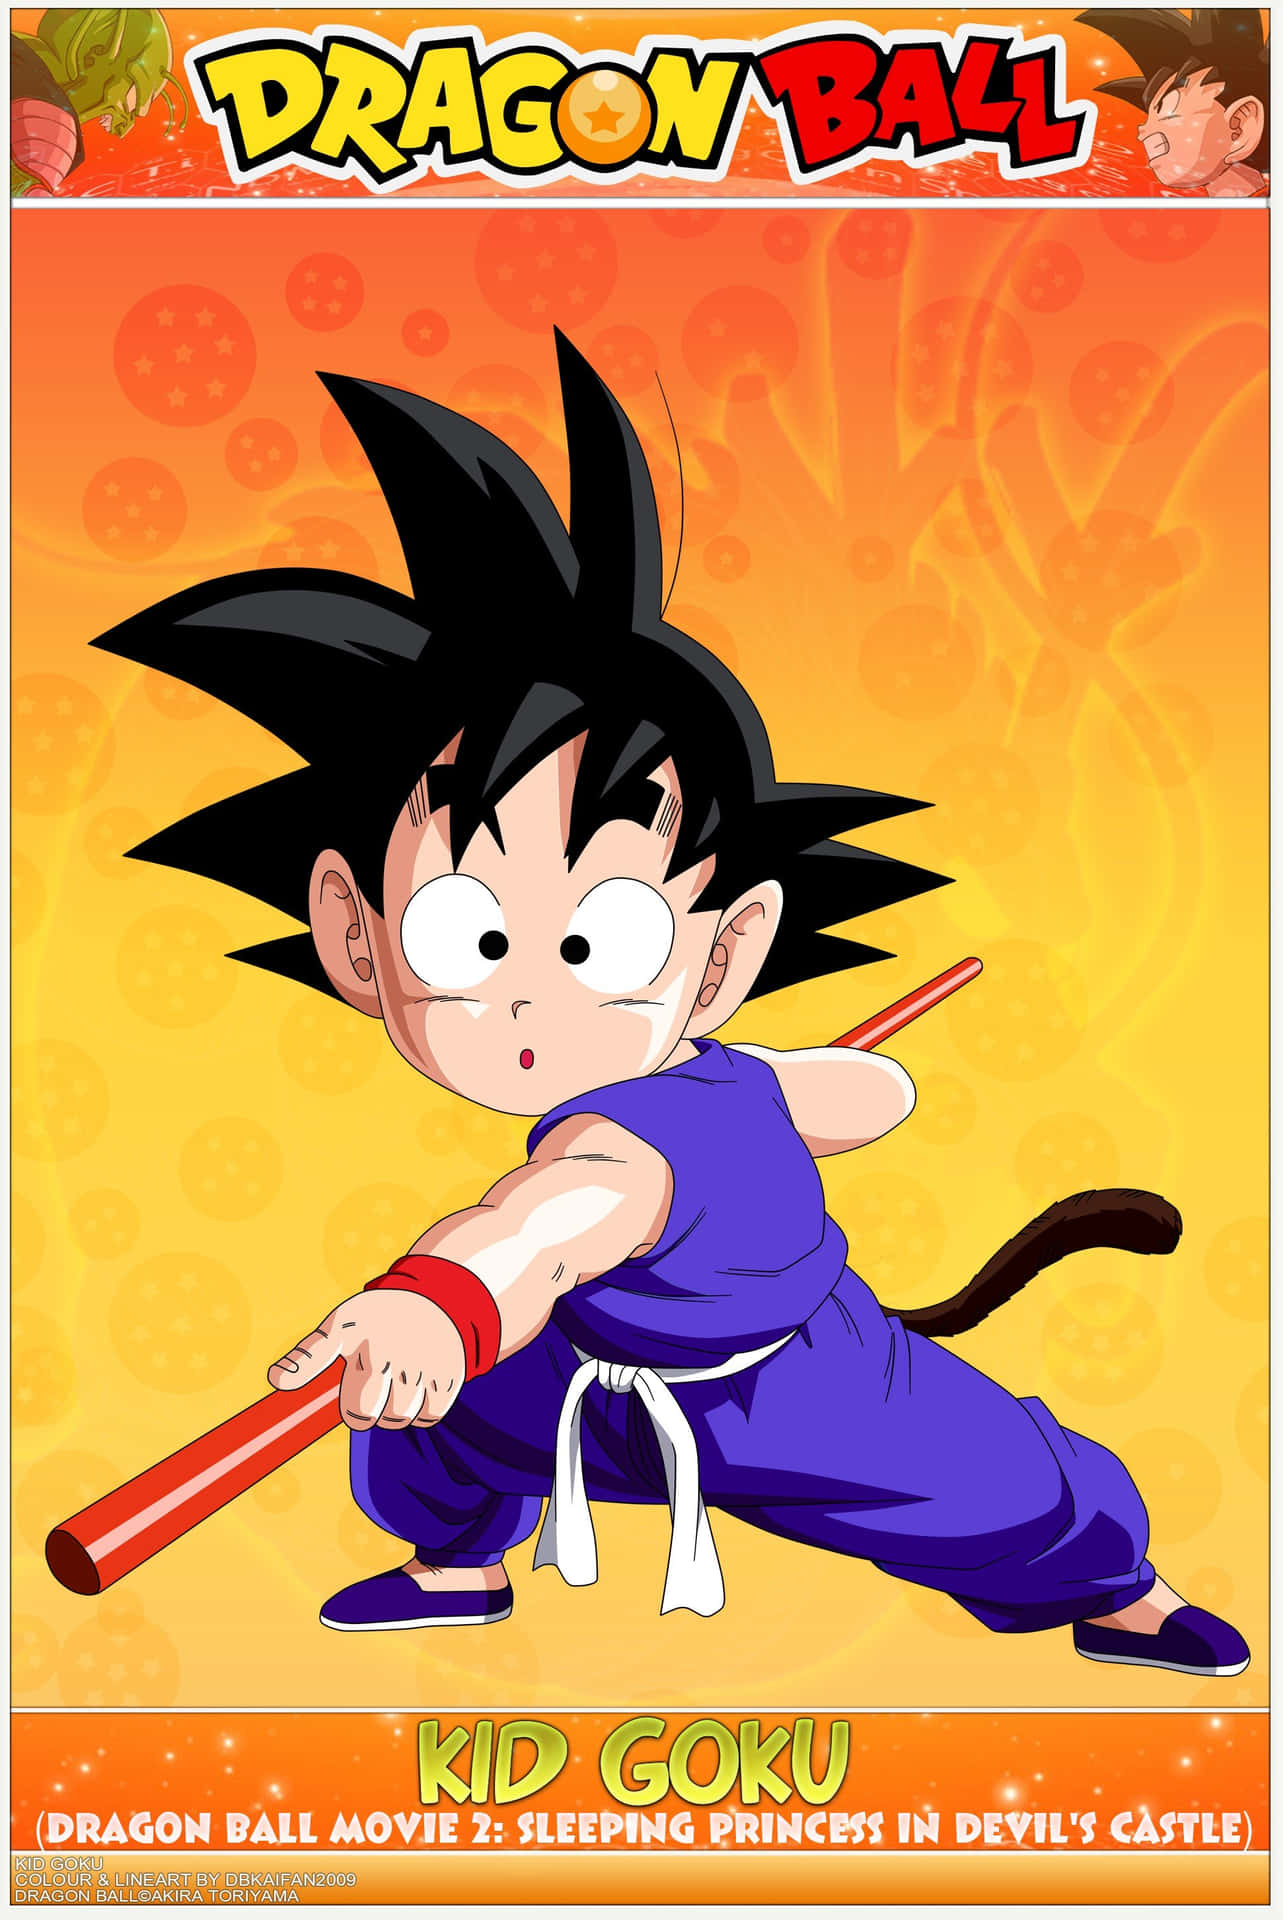 Posterdo Kid Goku De Dragon Ball. Papel de Parede